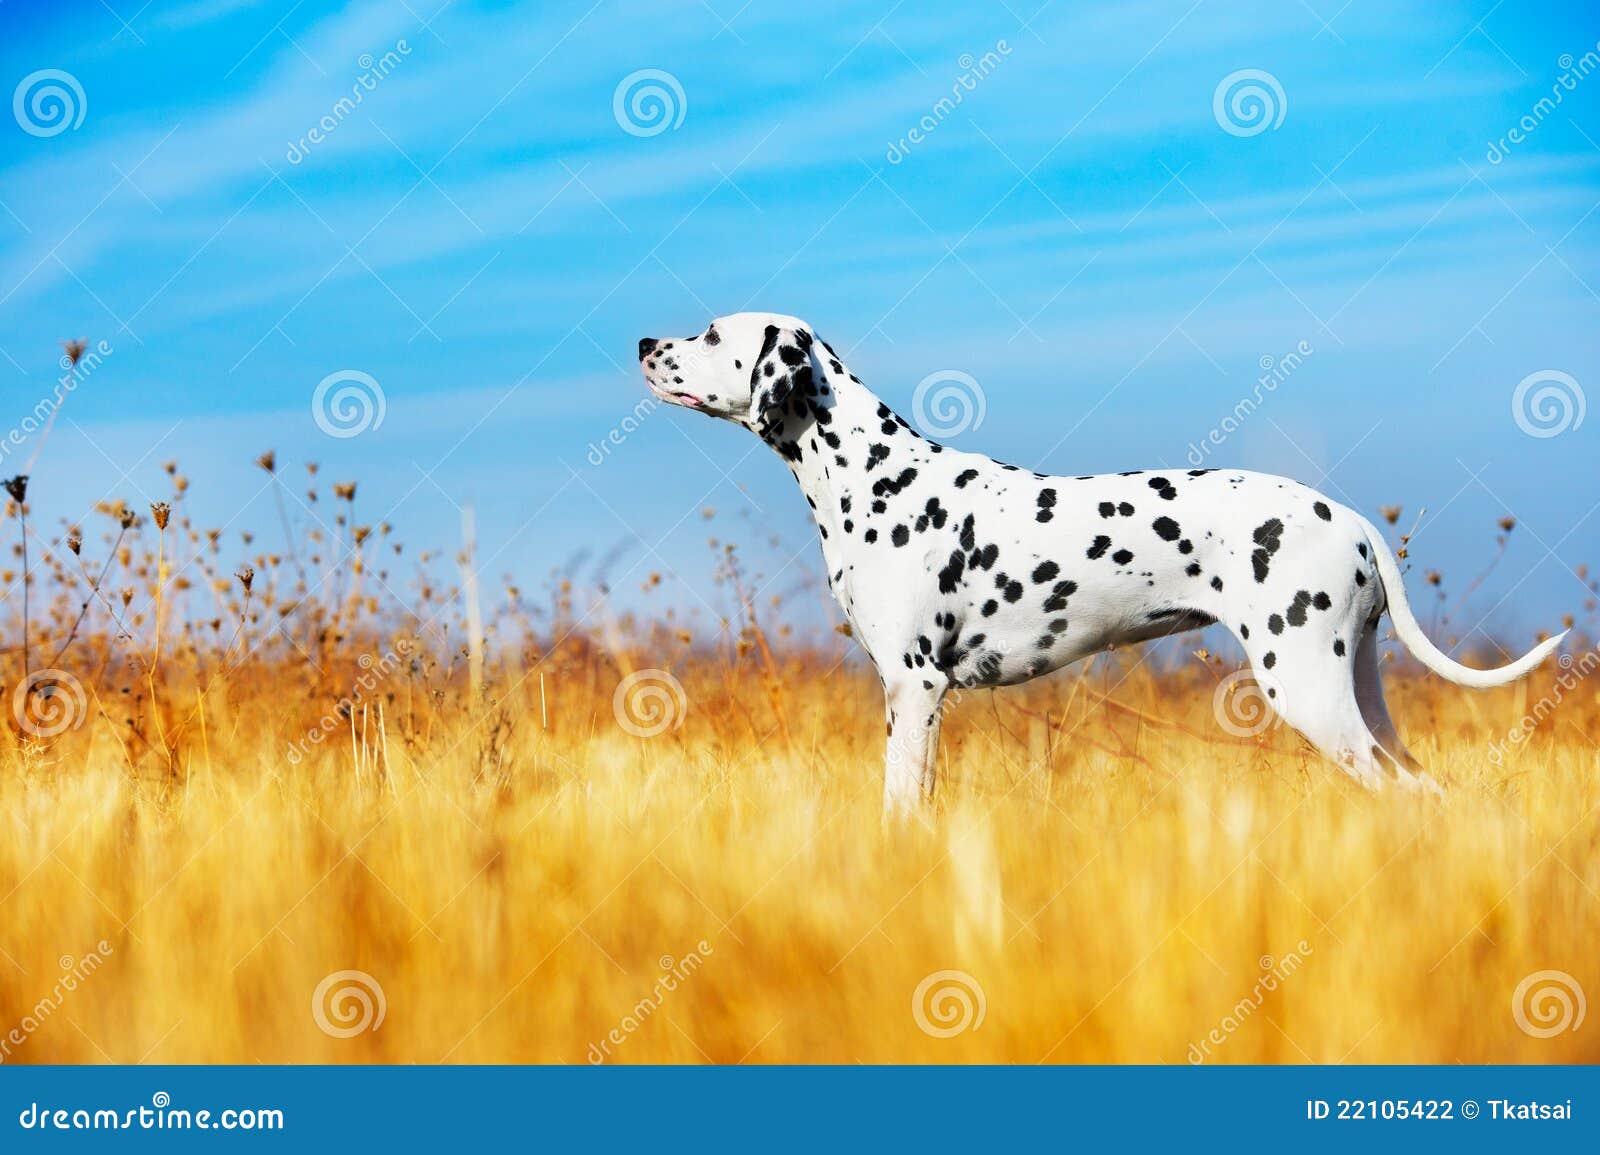 beautiful dalmatian dog